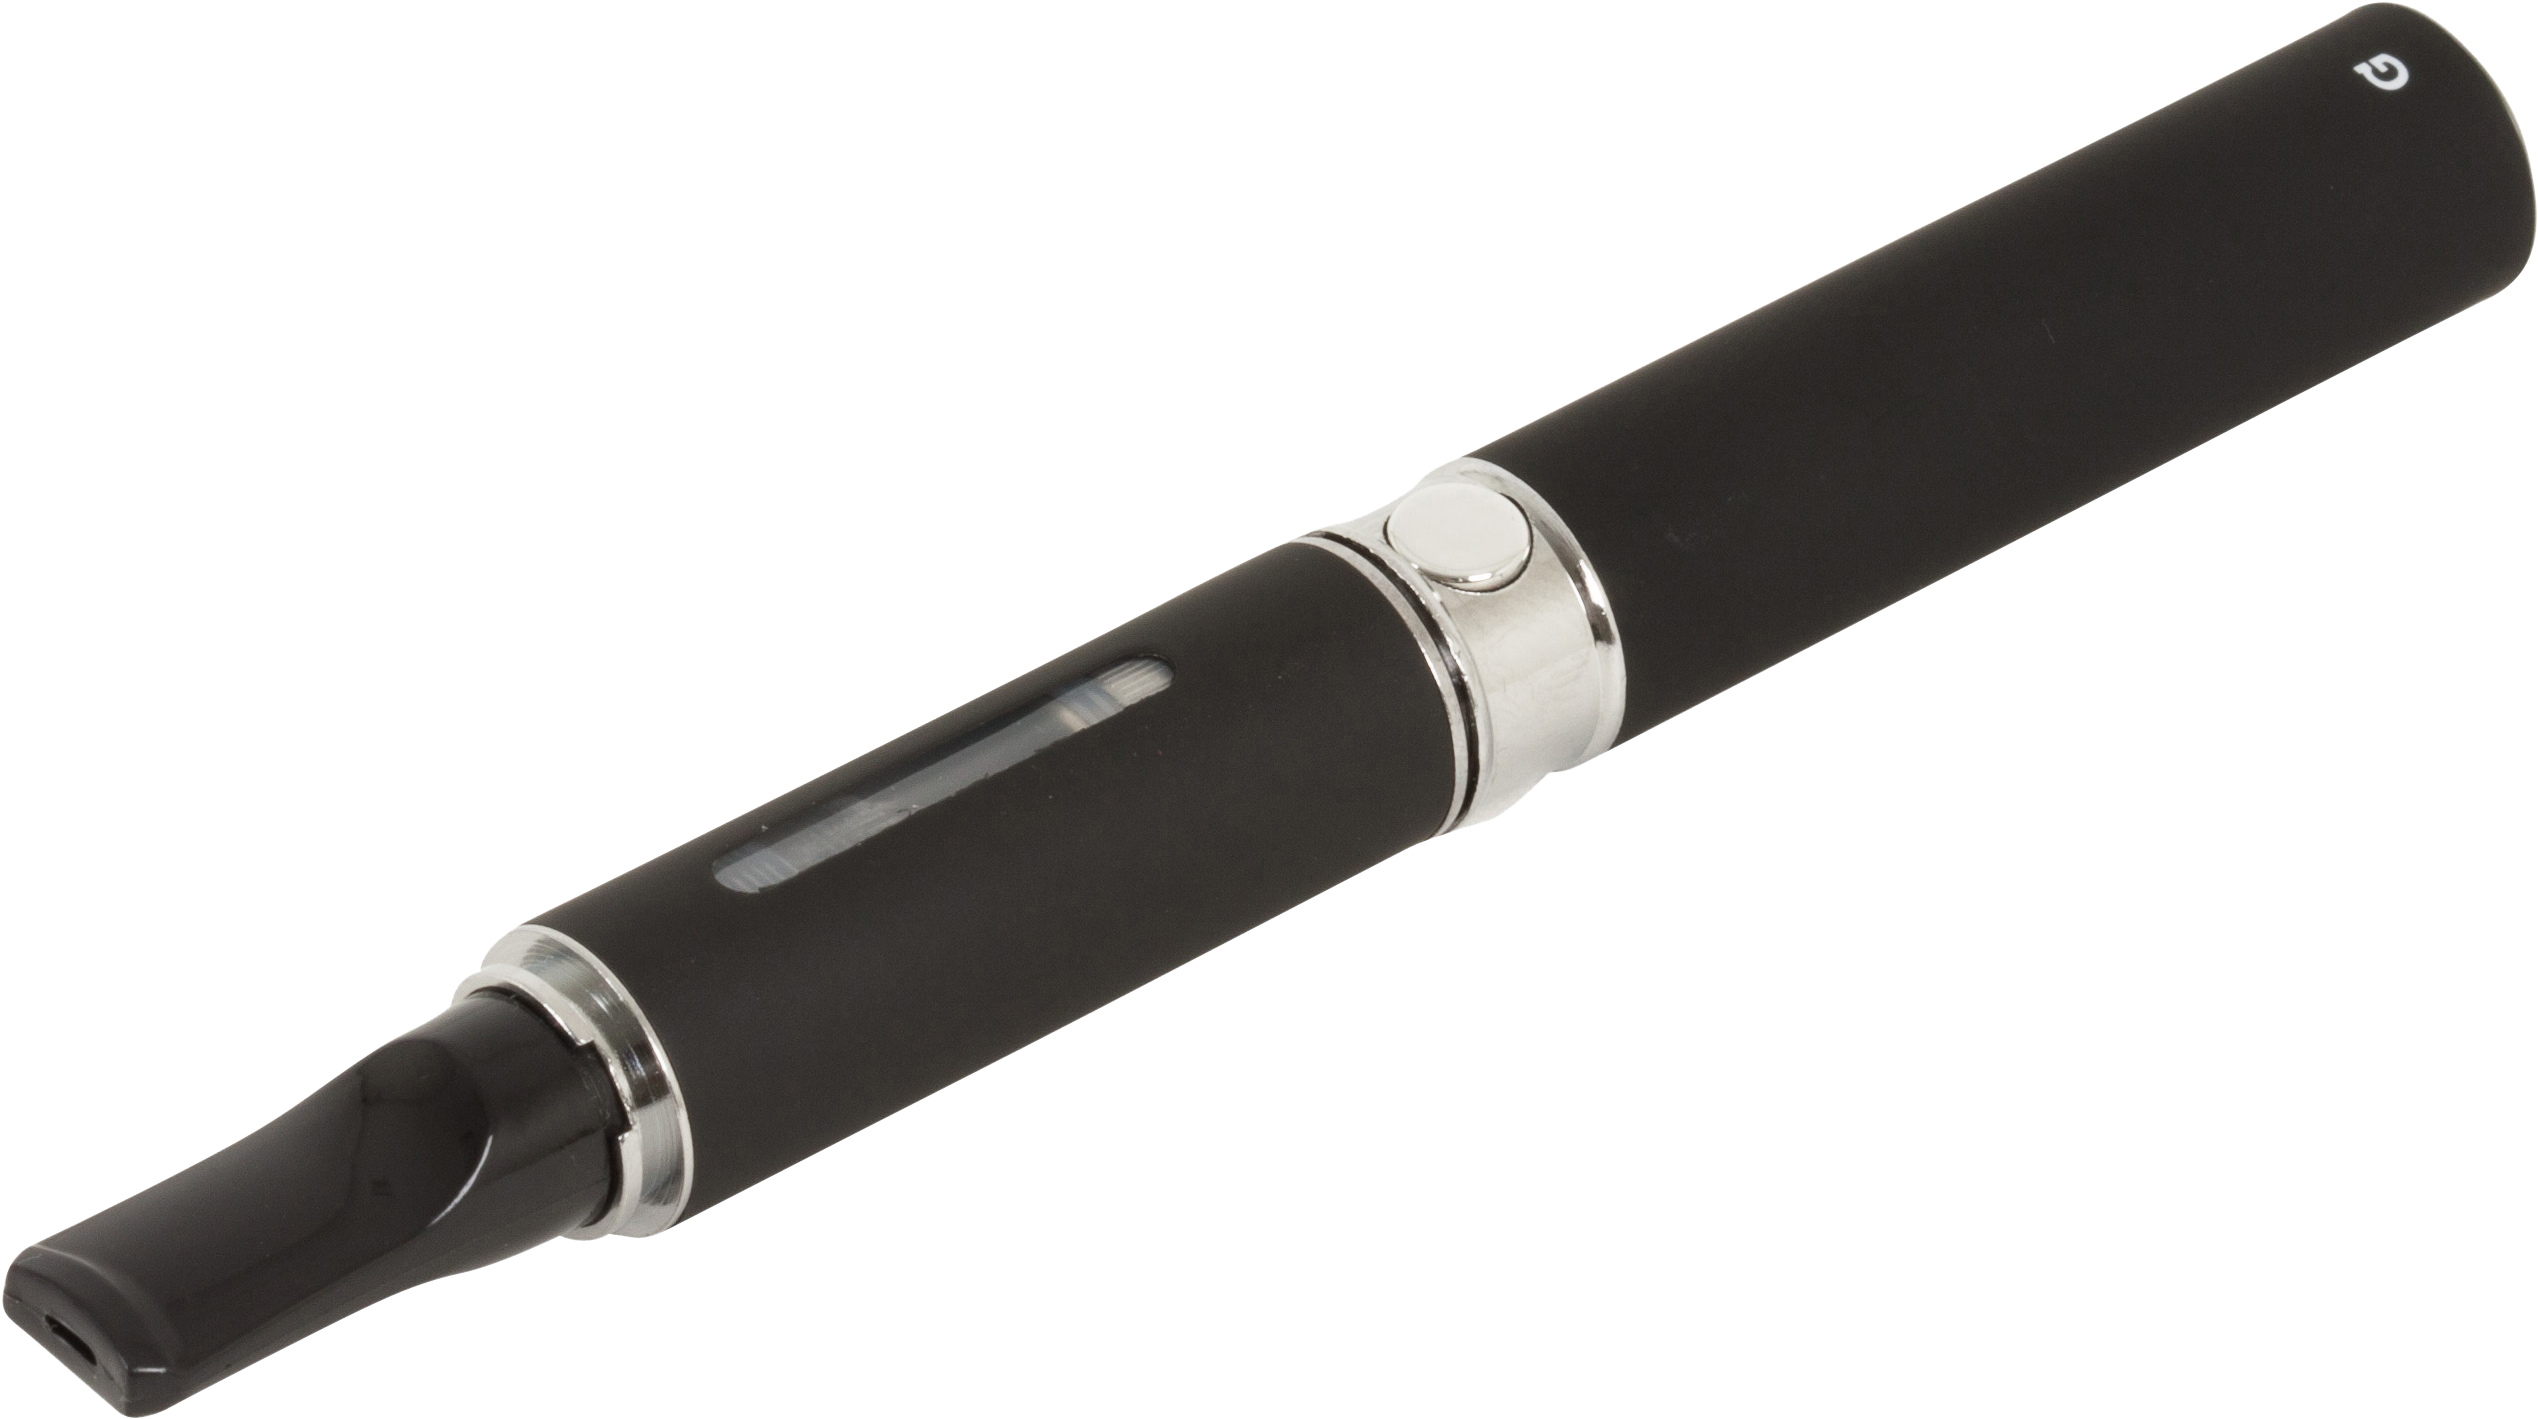 The G Pen - Pen Vaporizer (2544x1424), Png Download